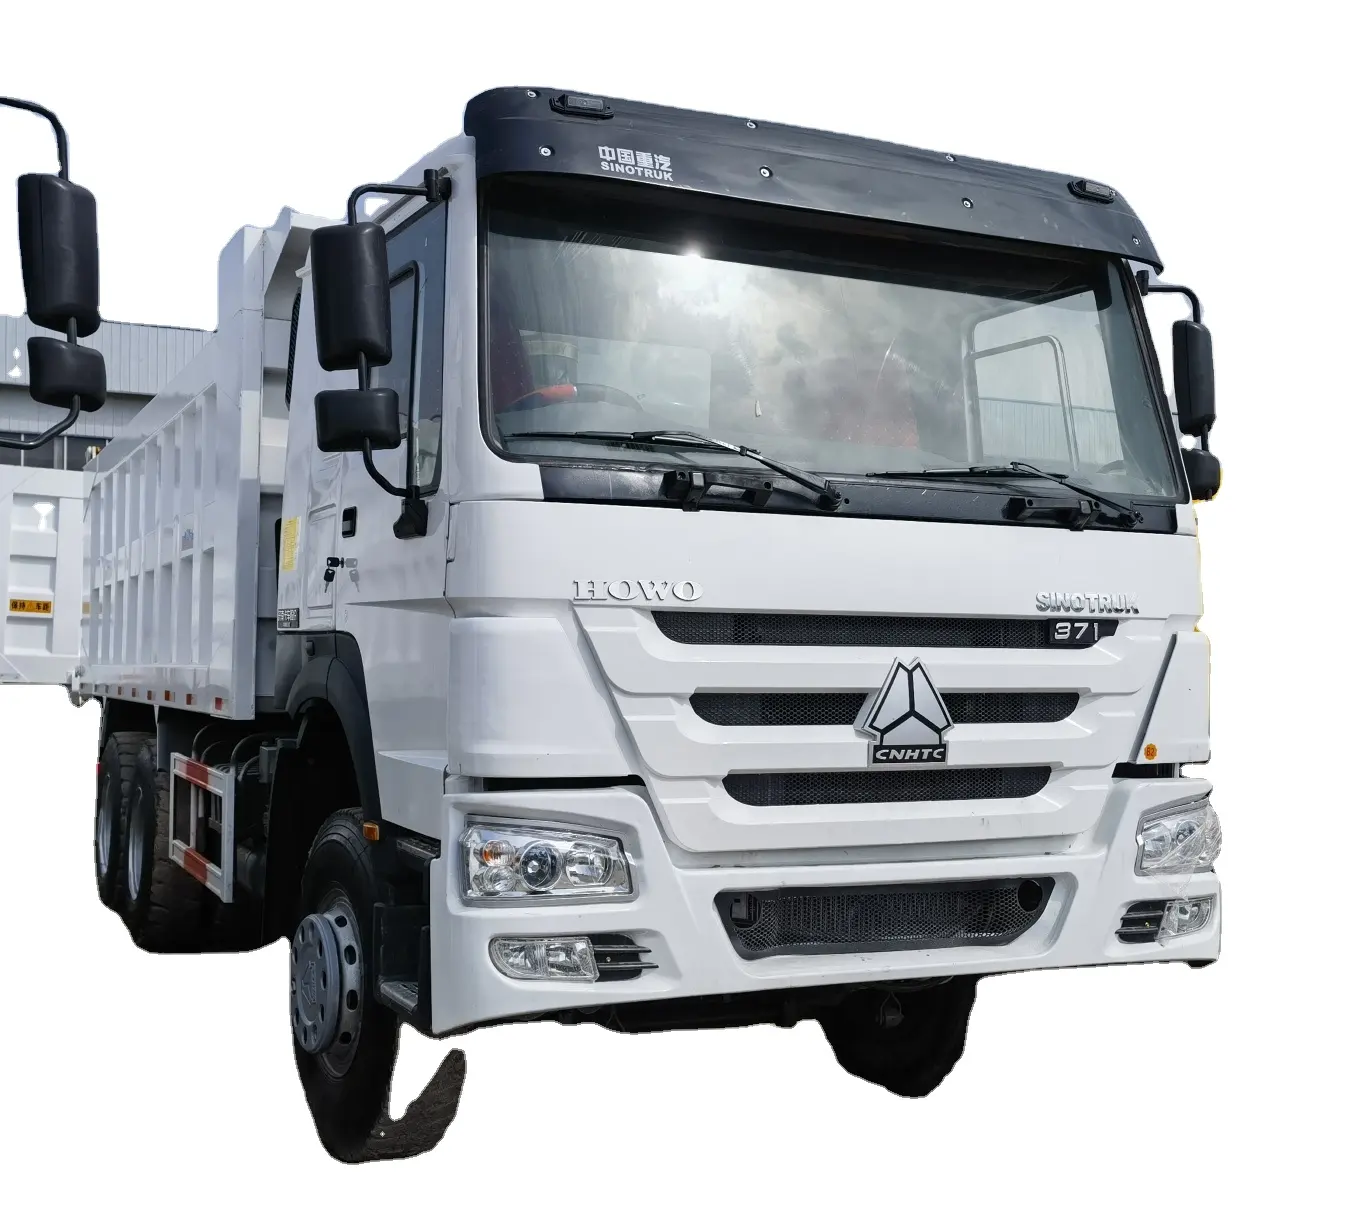 شاحنة سينوتراك مستعملة بحالة جيدة بقوة 375 حصان و10 و12 عجلة 6x4 8x4 شاحنة هوو تيبربر تعمل بالديزل وشاحنة نقل يدوي شاحنة ثقيلة للقارة الأفريقية